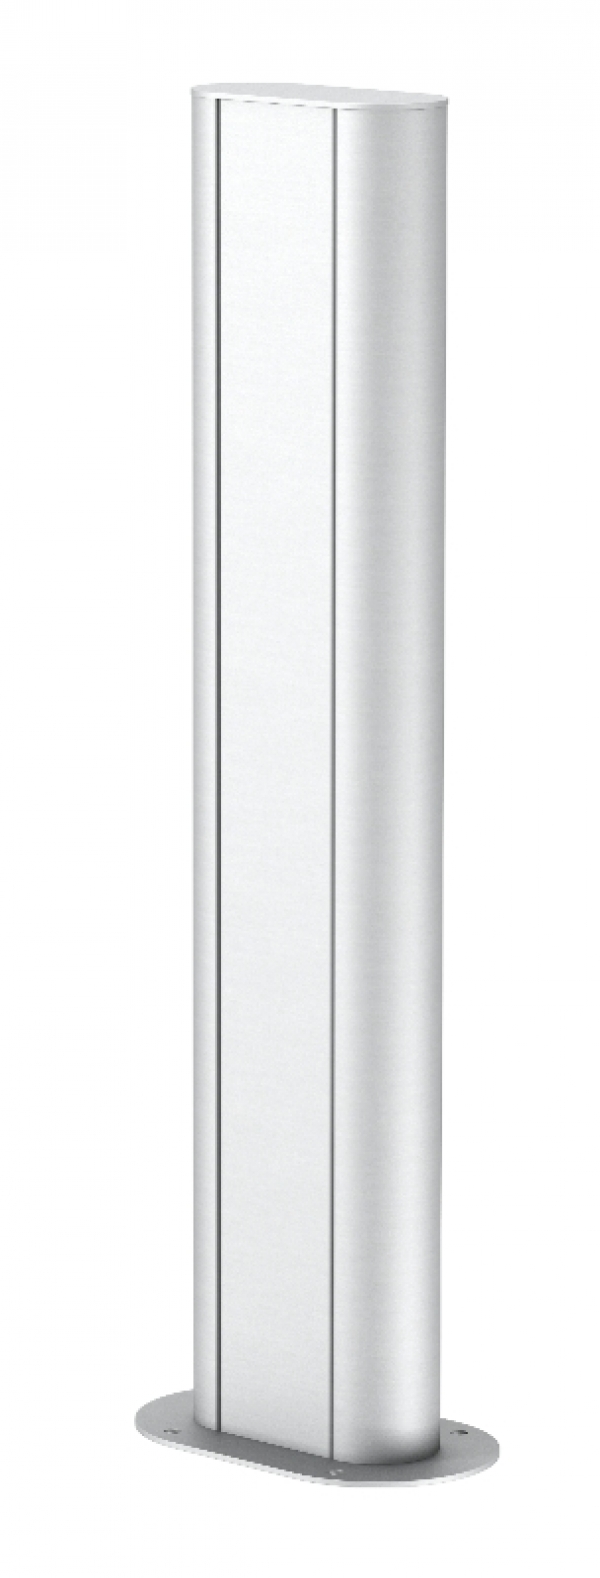 6289098 - OBO BETTERMANN Электромонтажная колонна 0,68 м 1-сторонняя 70x140x675 мм (алюминий,белый) (ISSOGHS70140RW).